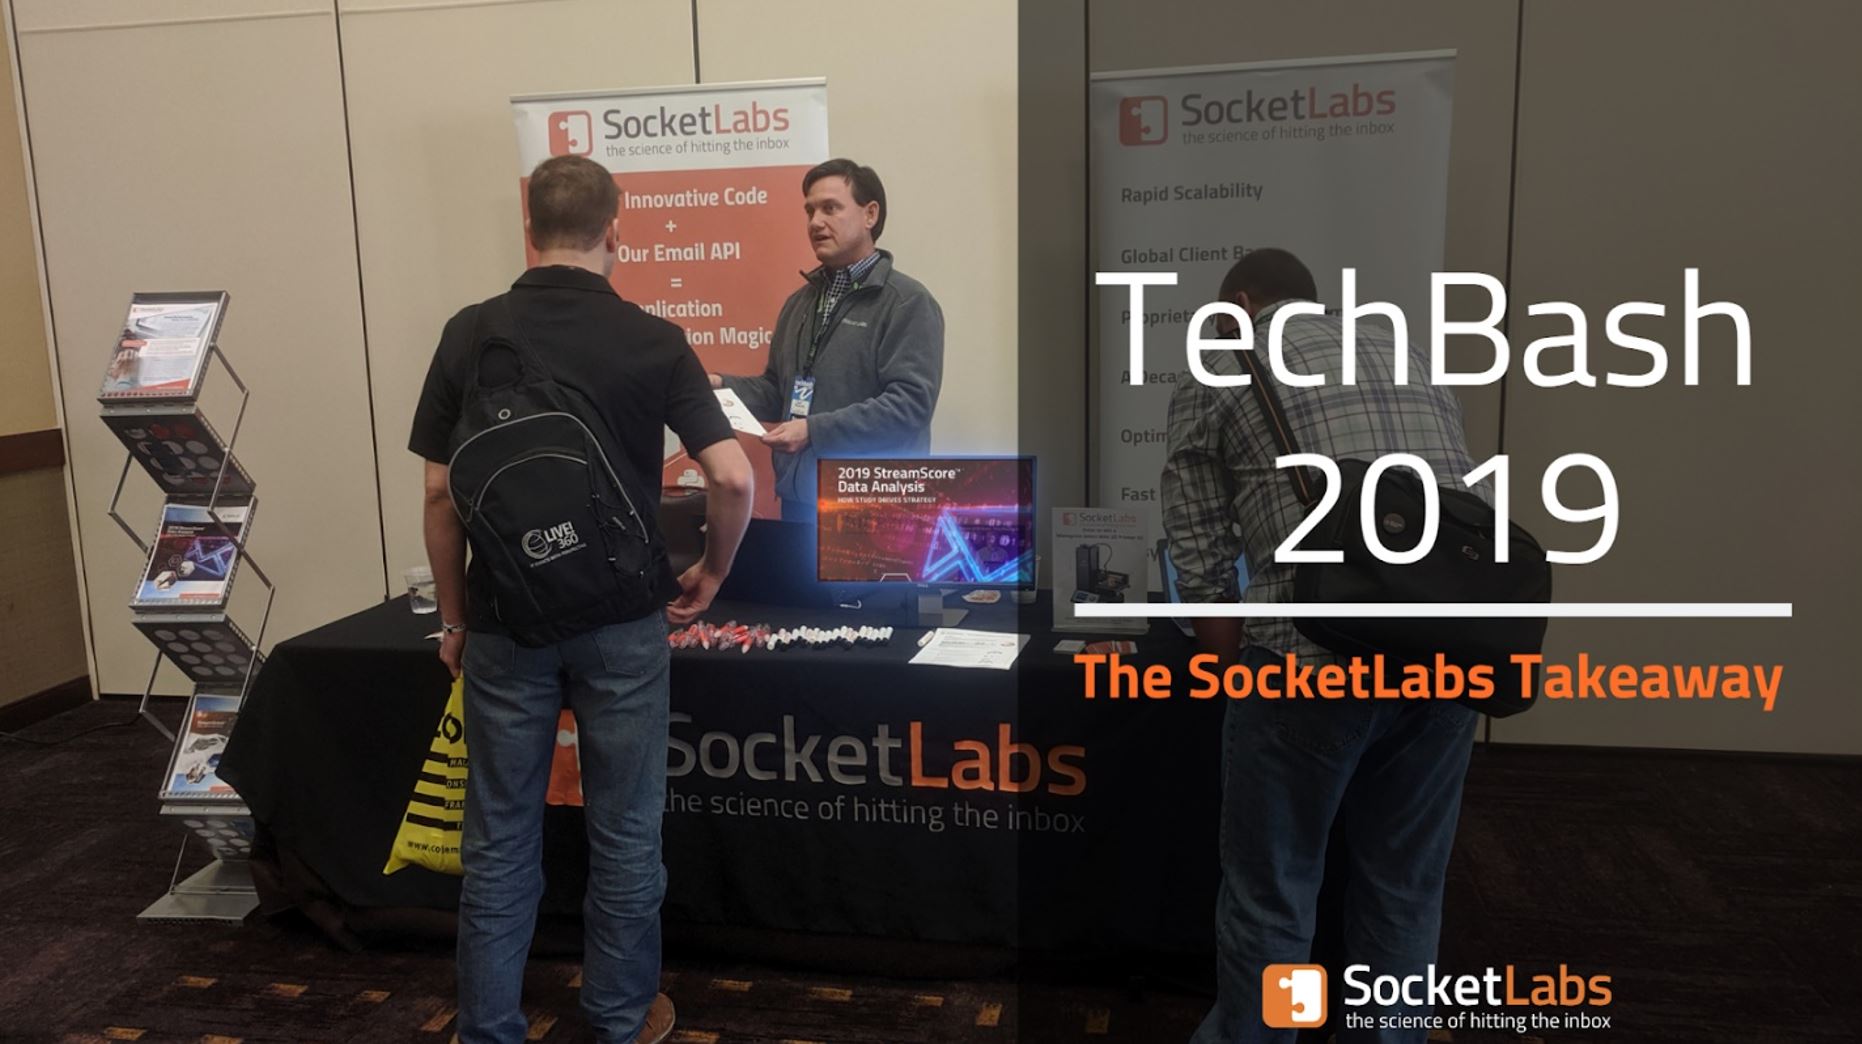 socketlabs at techbash 2019